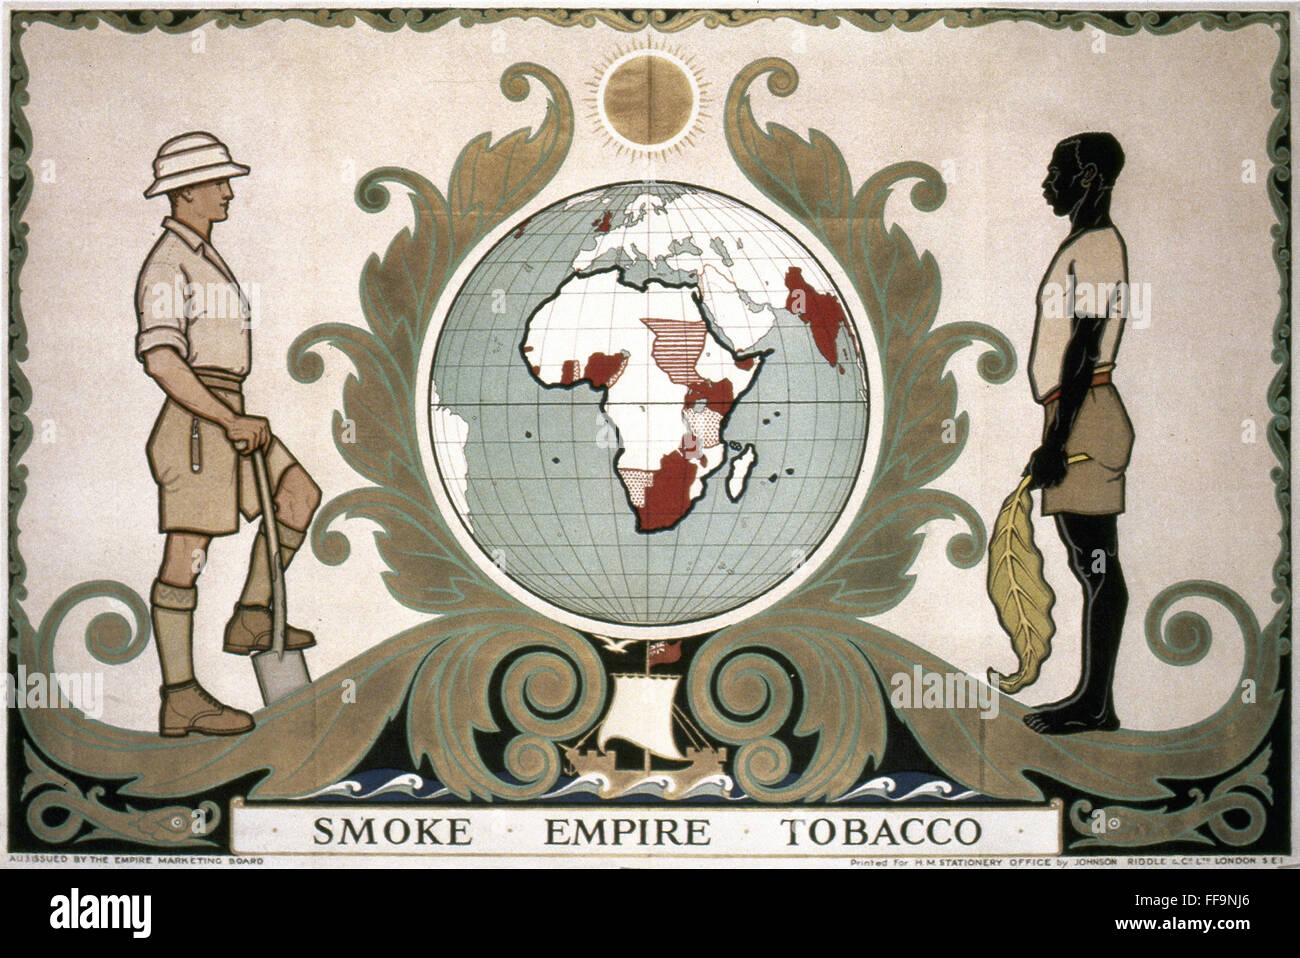 SMOKE EMPIRE TOBACCO. /nBritish Empire Marketing Board poster, 1929. Stock Photo